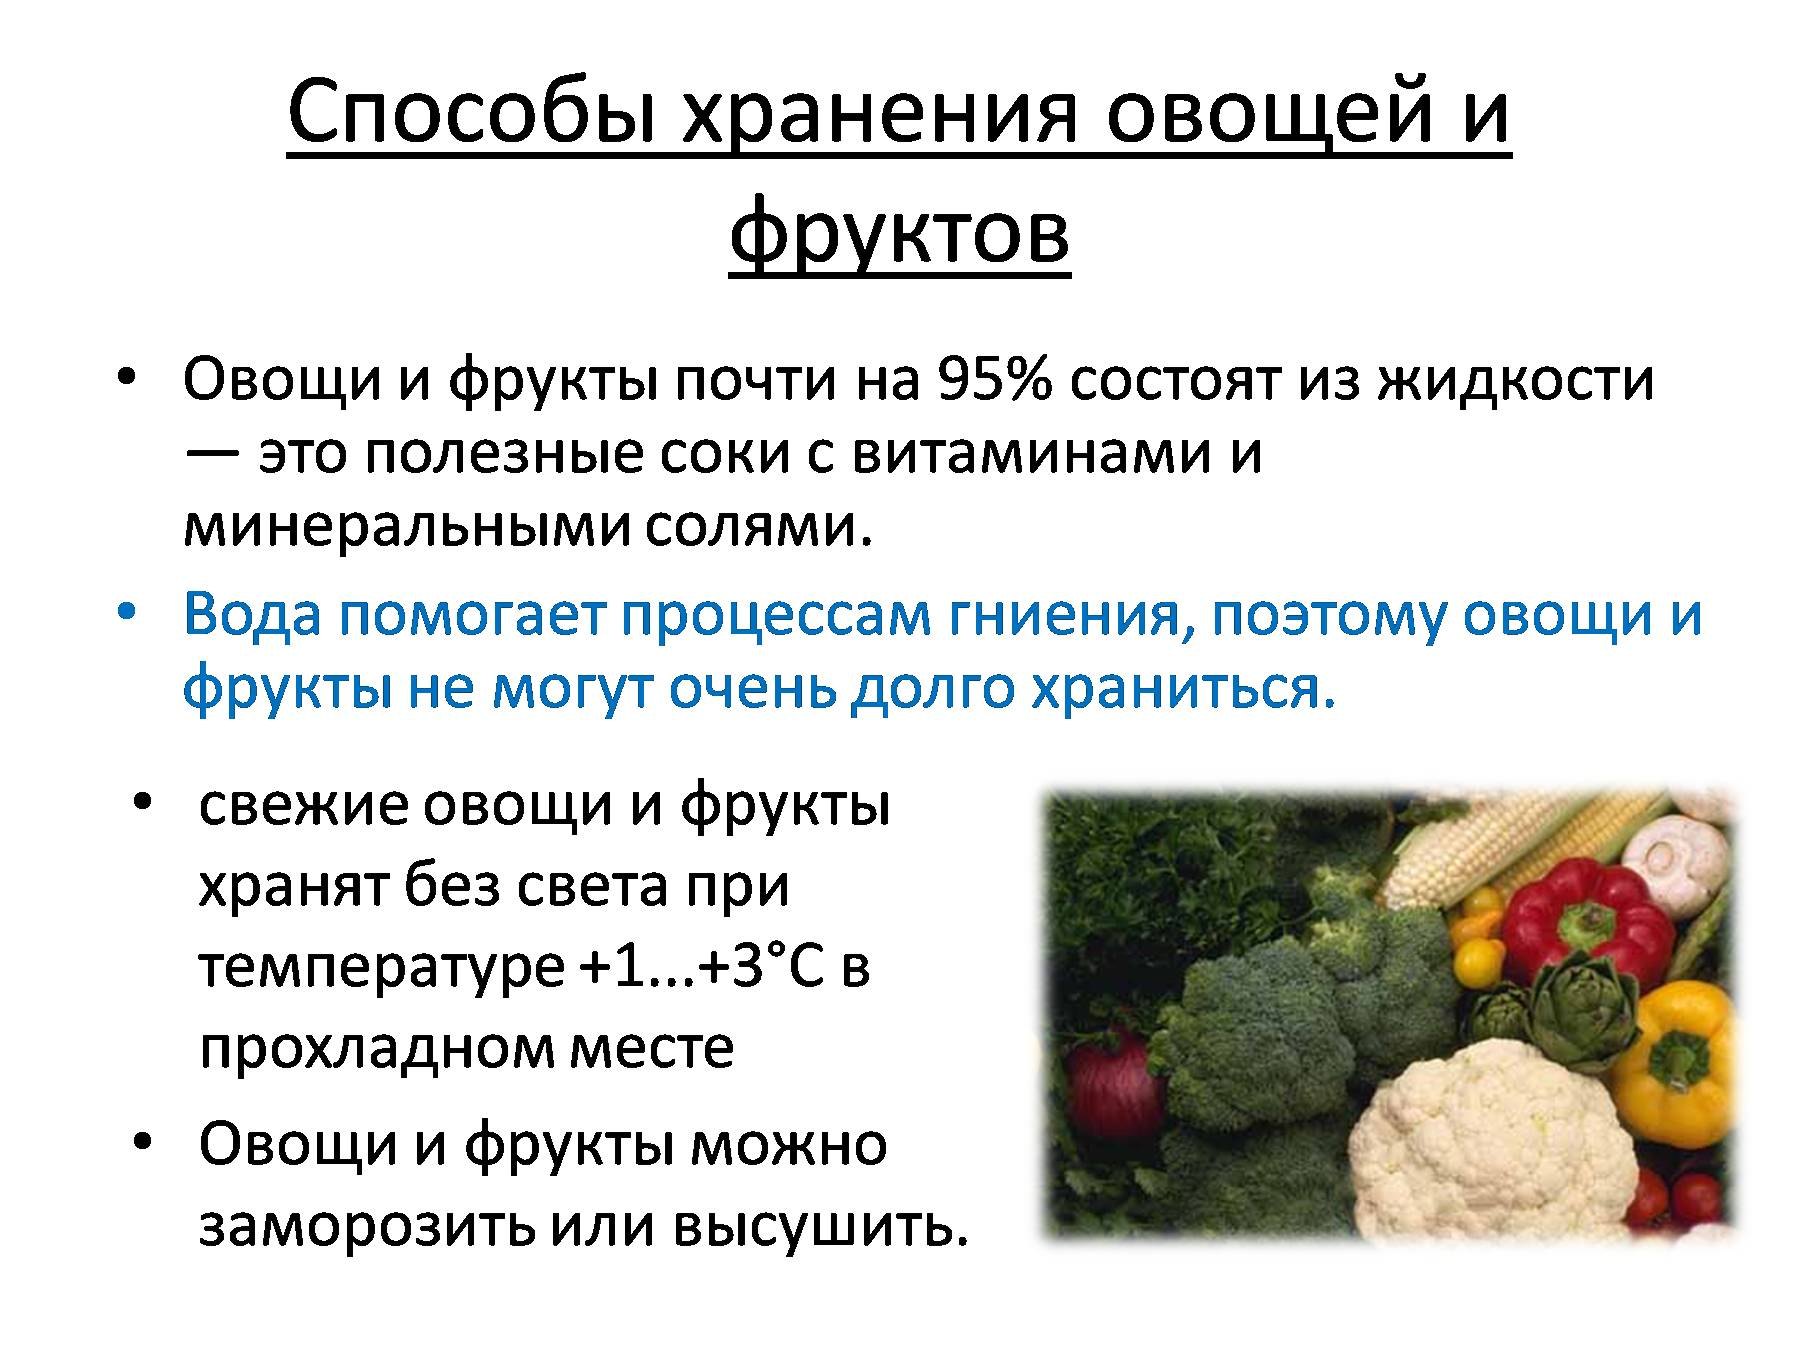 Очищенные овощи хранят. Способы хранения овощей. Методы сохранения овощей и плодов. Способы хранения овощей и фрукто. Условия хранения плодов и овощей.